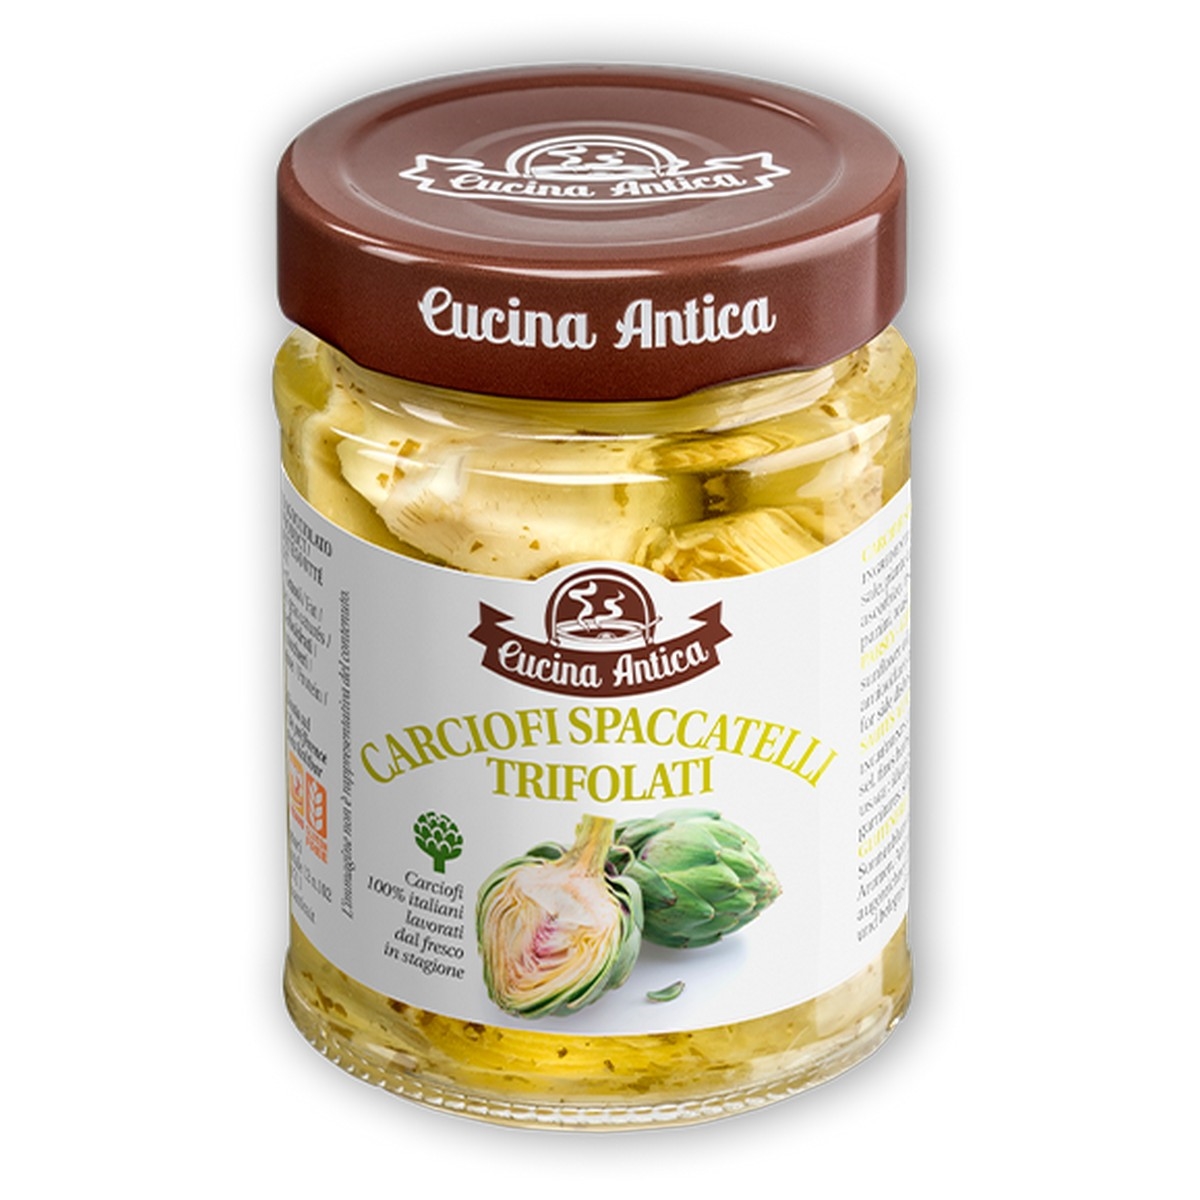 Cucina Antica - Carciofi Spaccatelli - 230 g